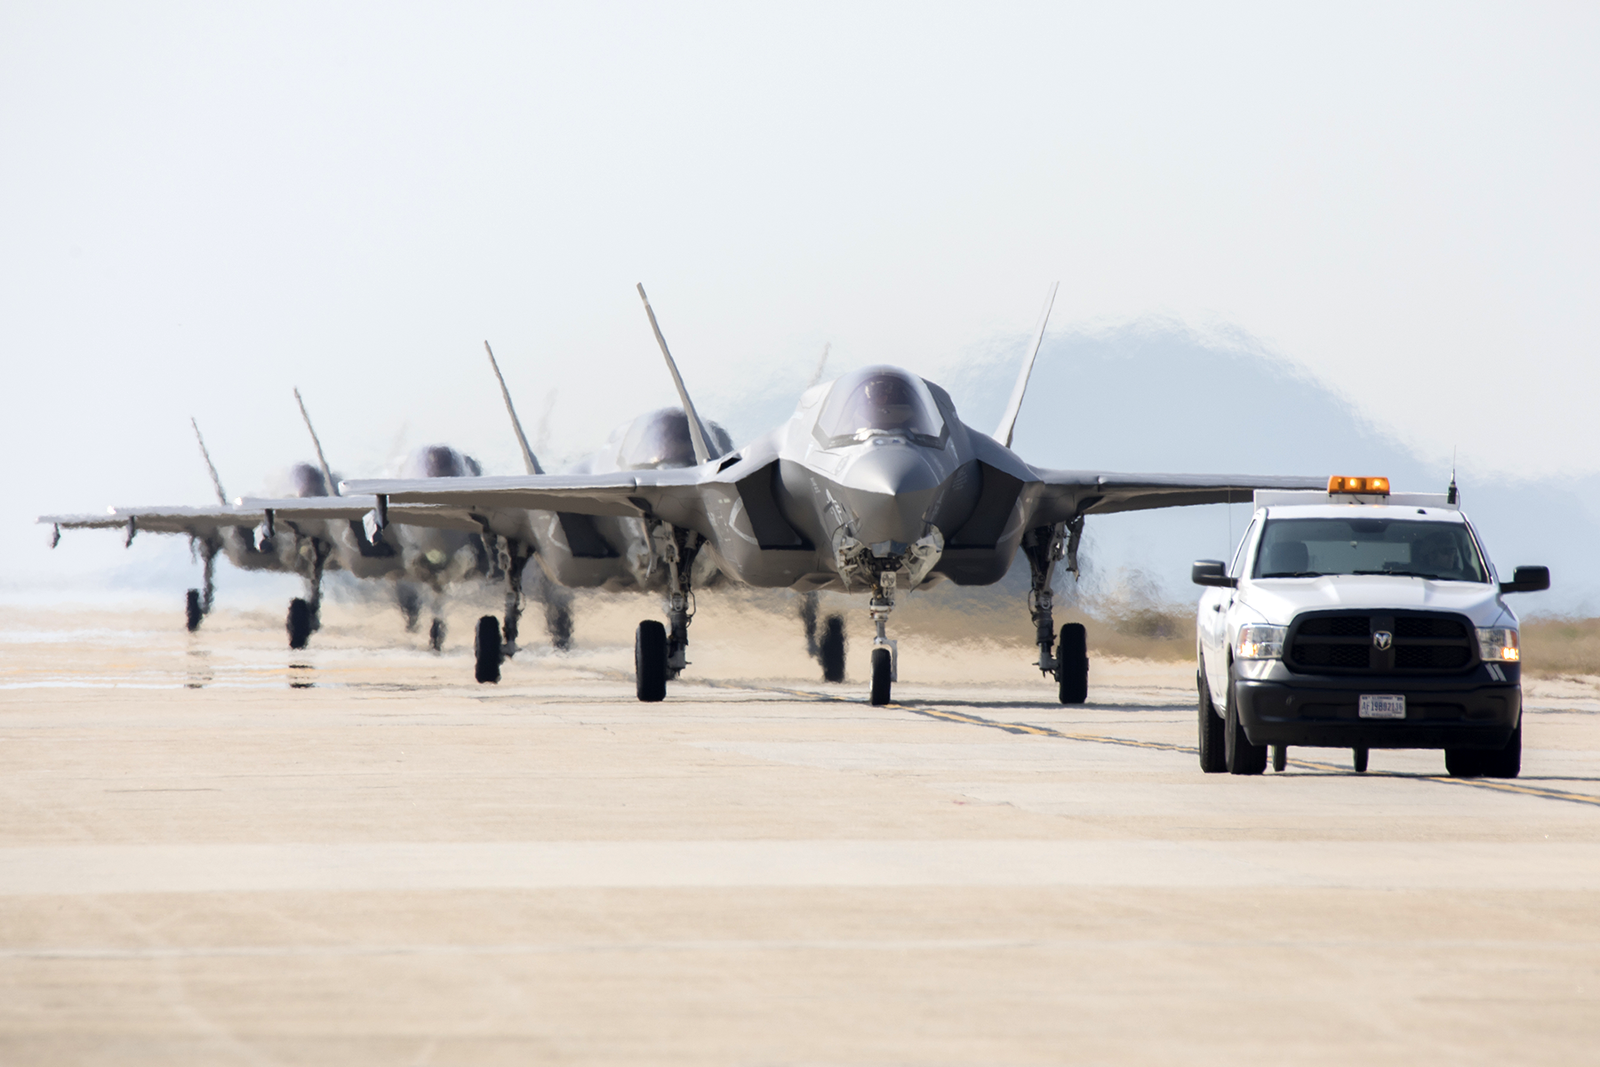 Corea del Sur podrá adquirir hasta 25 cazas F-35A. Foto: Sgt. Jose Angeles / USAF